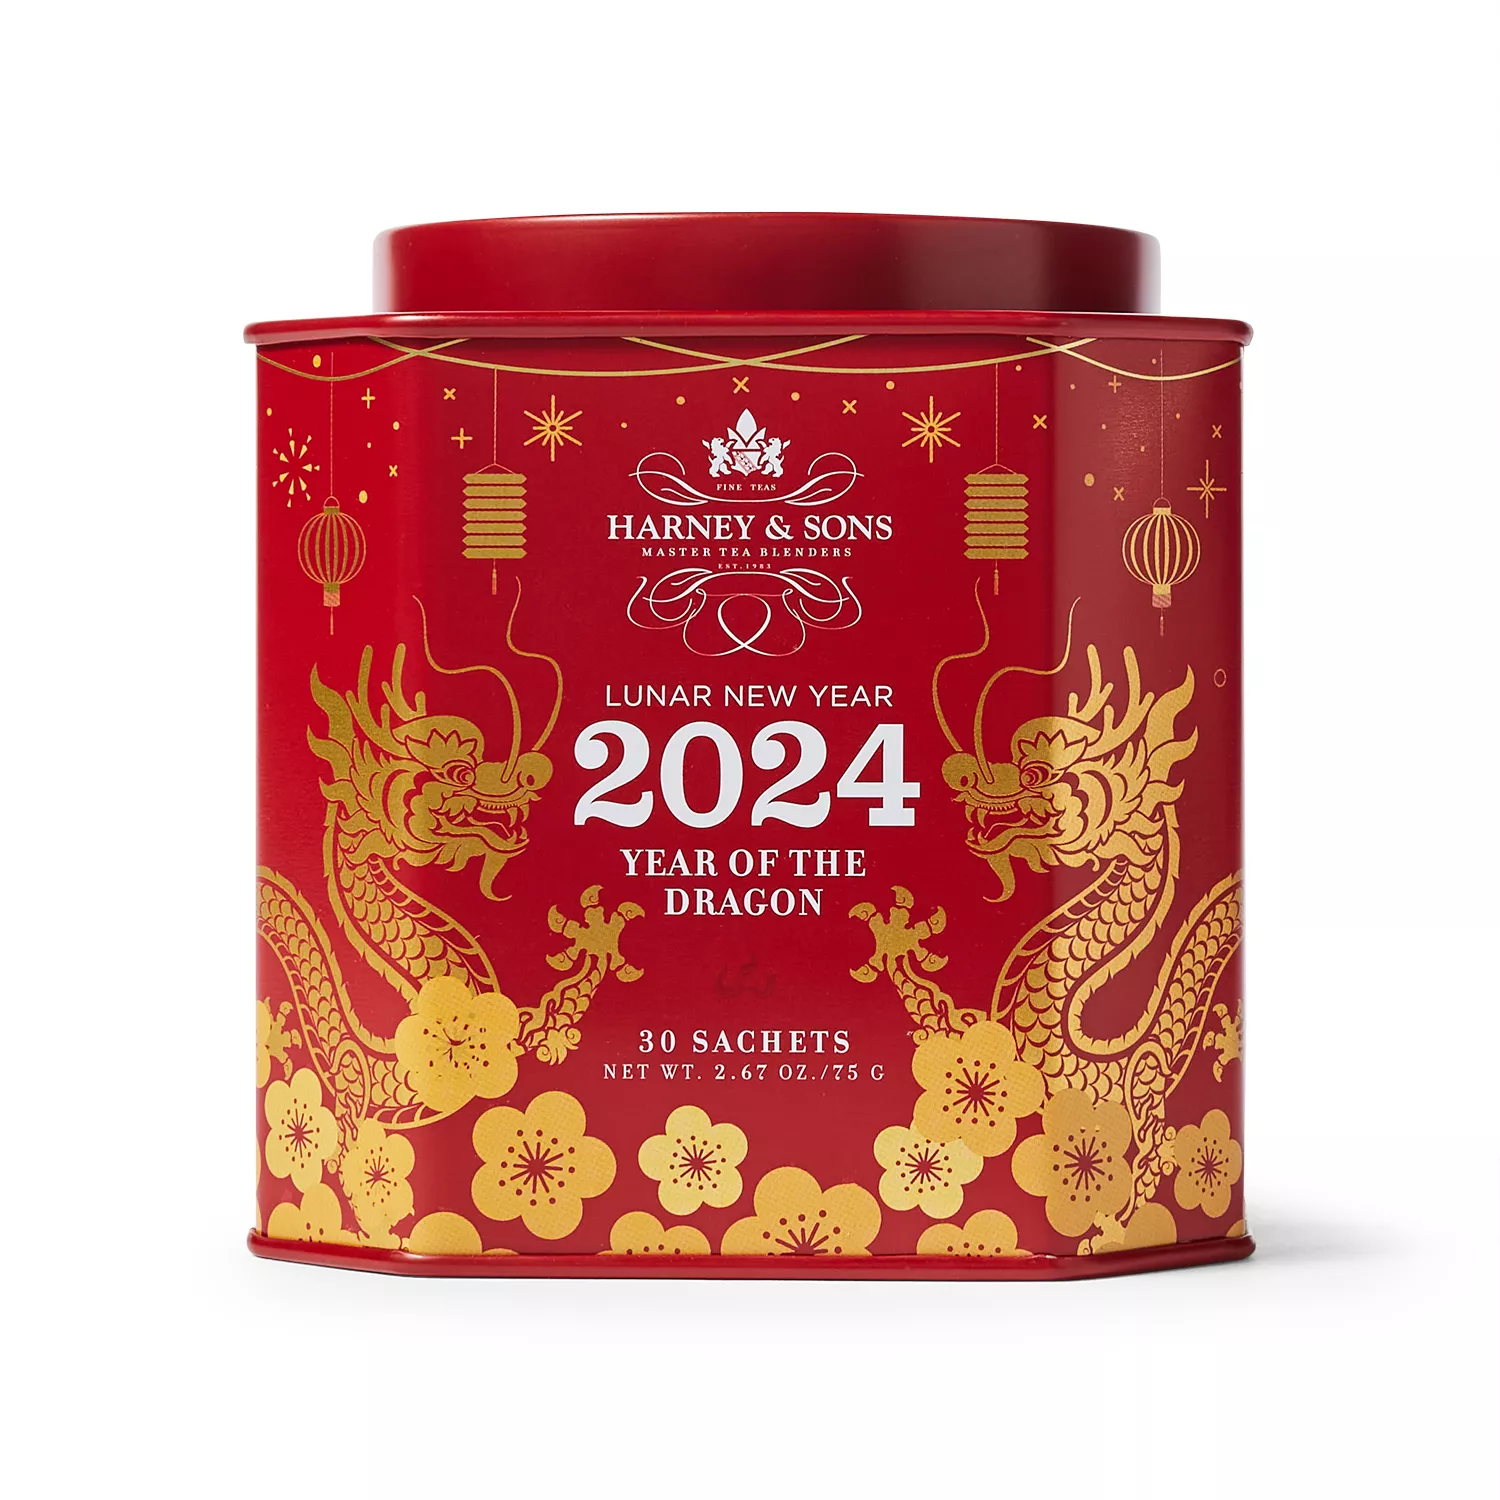 Harney & Sons' Lunar New Year Tea, 30 bags Sur La Table